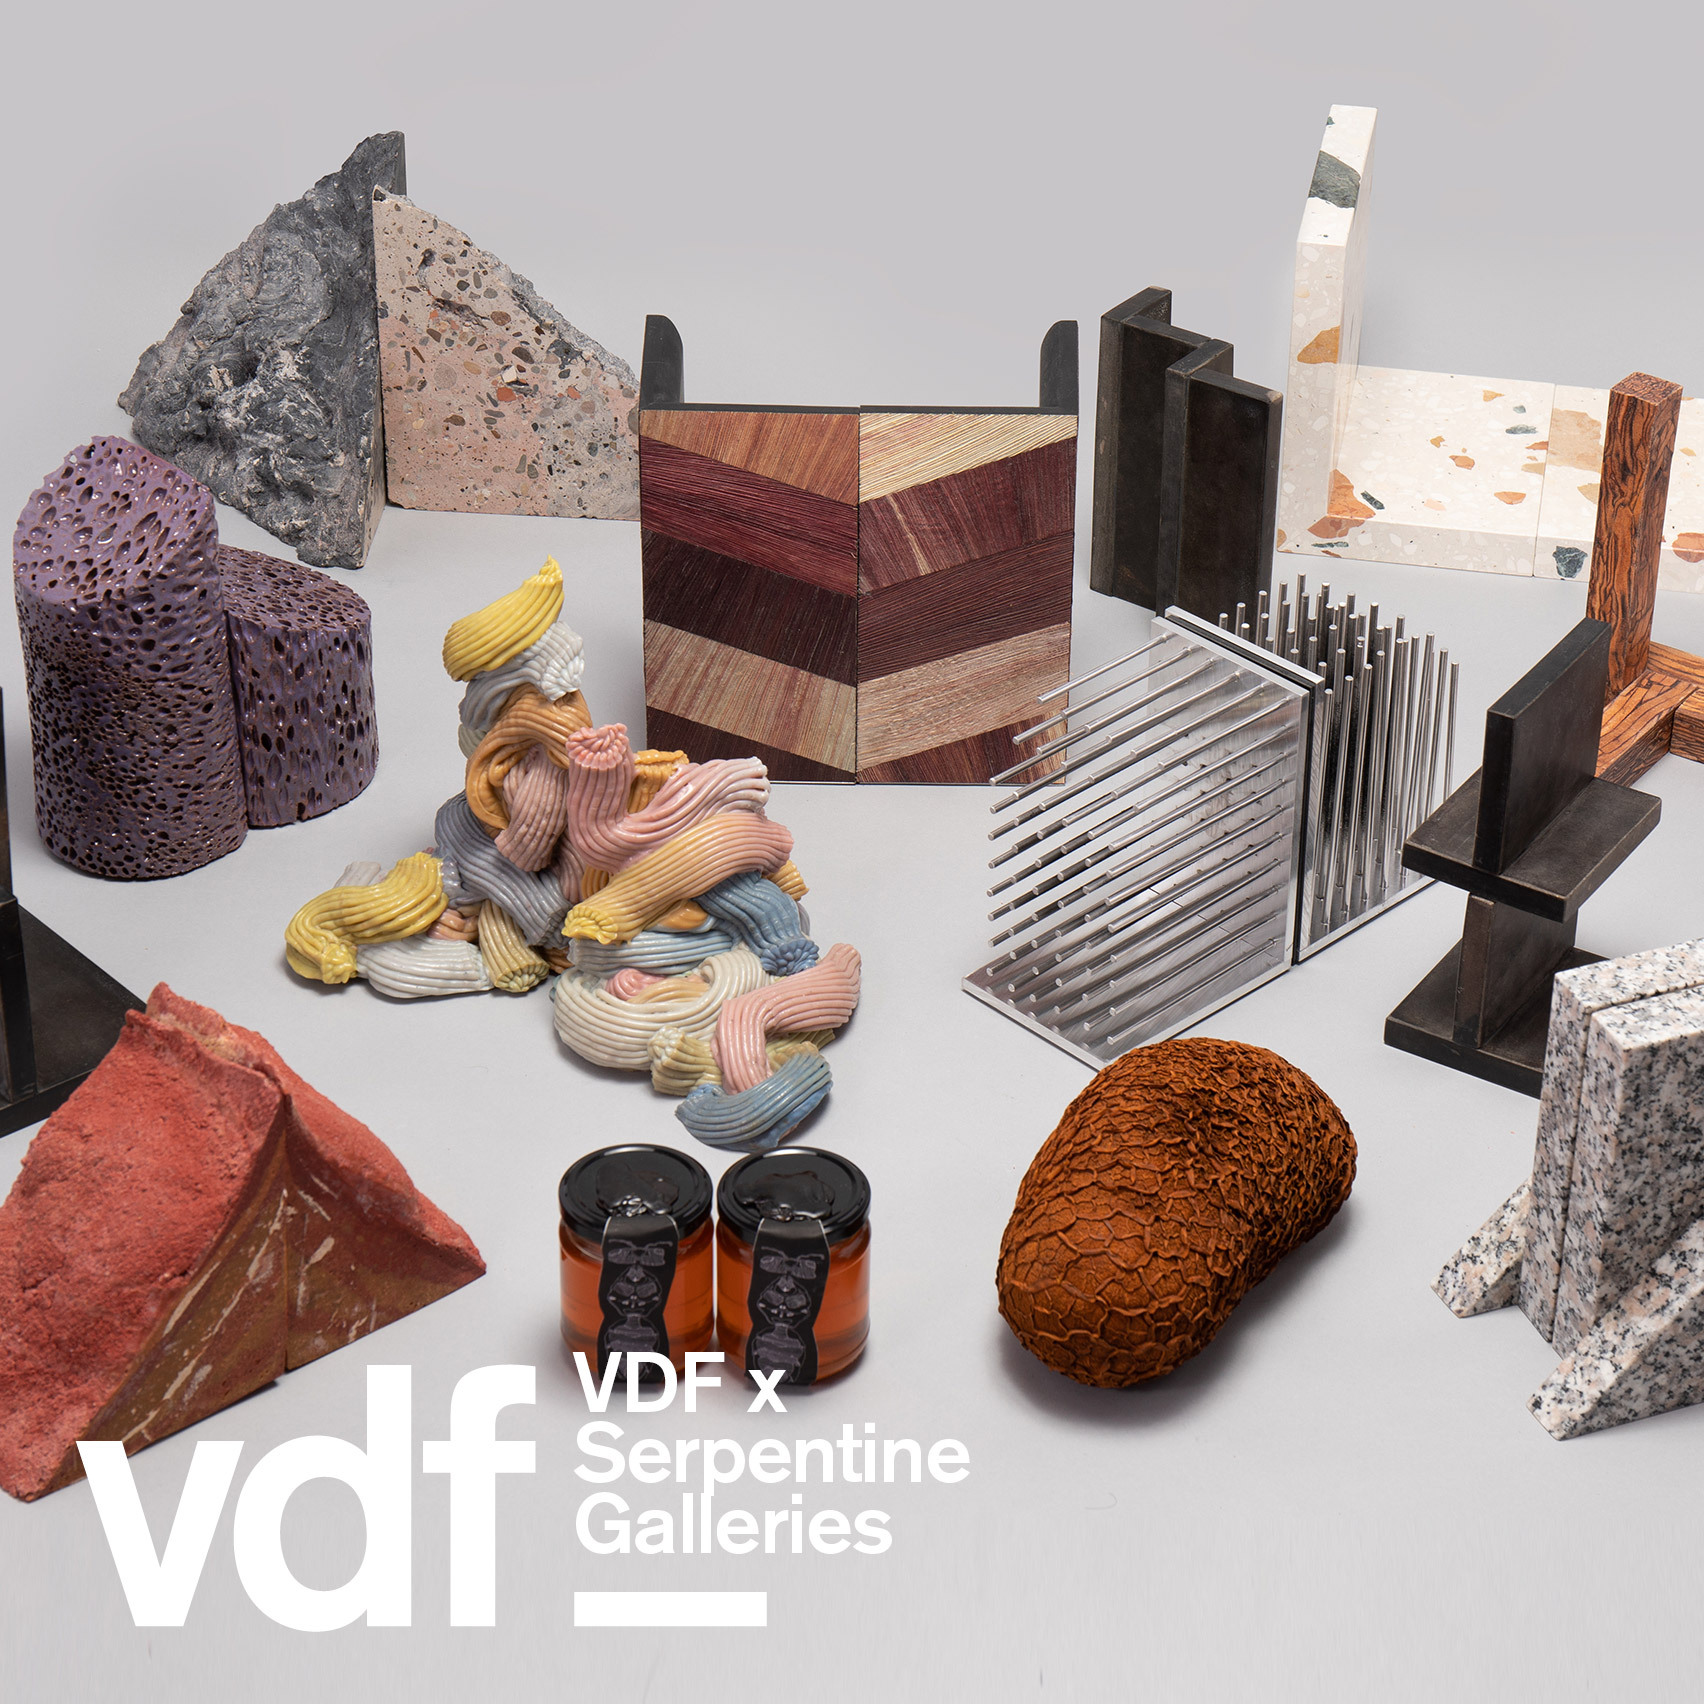 VDF x Serpentine Galleries